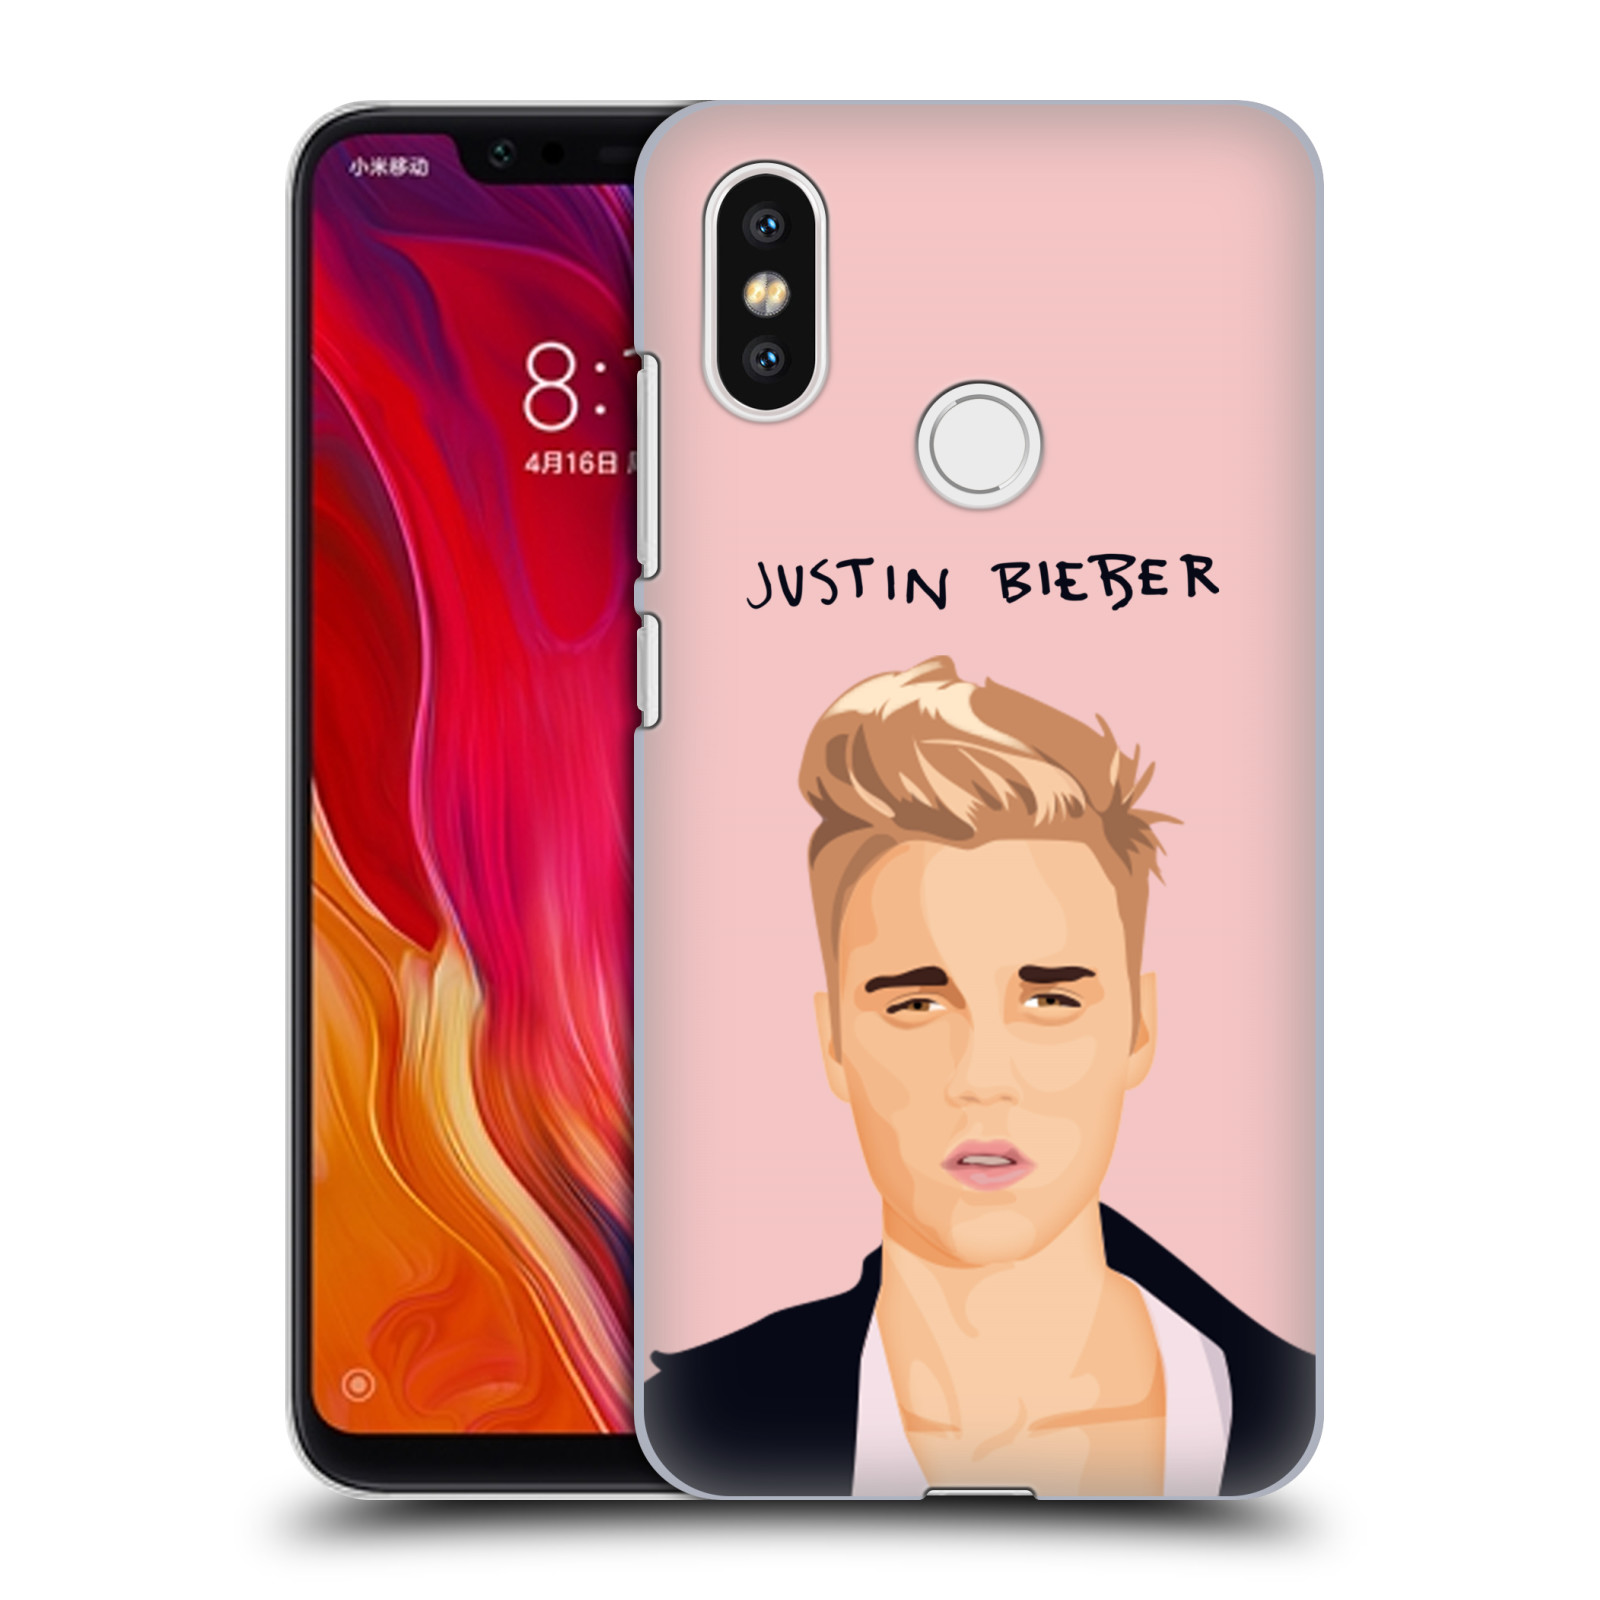 HEAD CASE plastový obal na mobil Xiaomi Mi 8 Justin Bieber kreslená tvář růžové pozadí